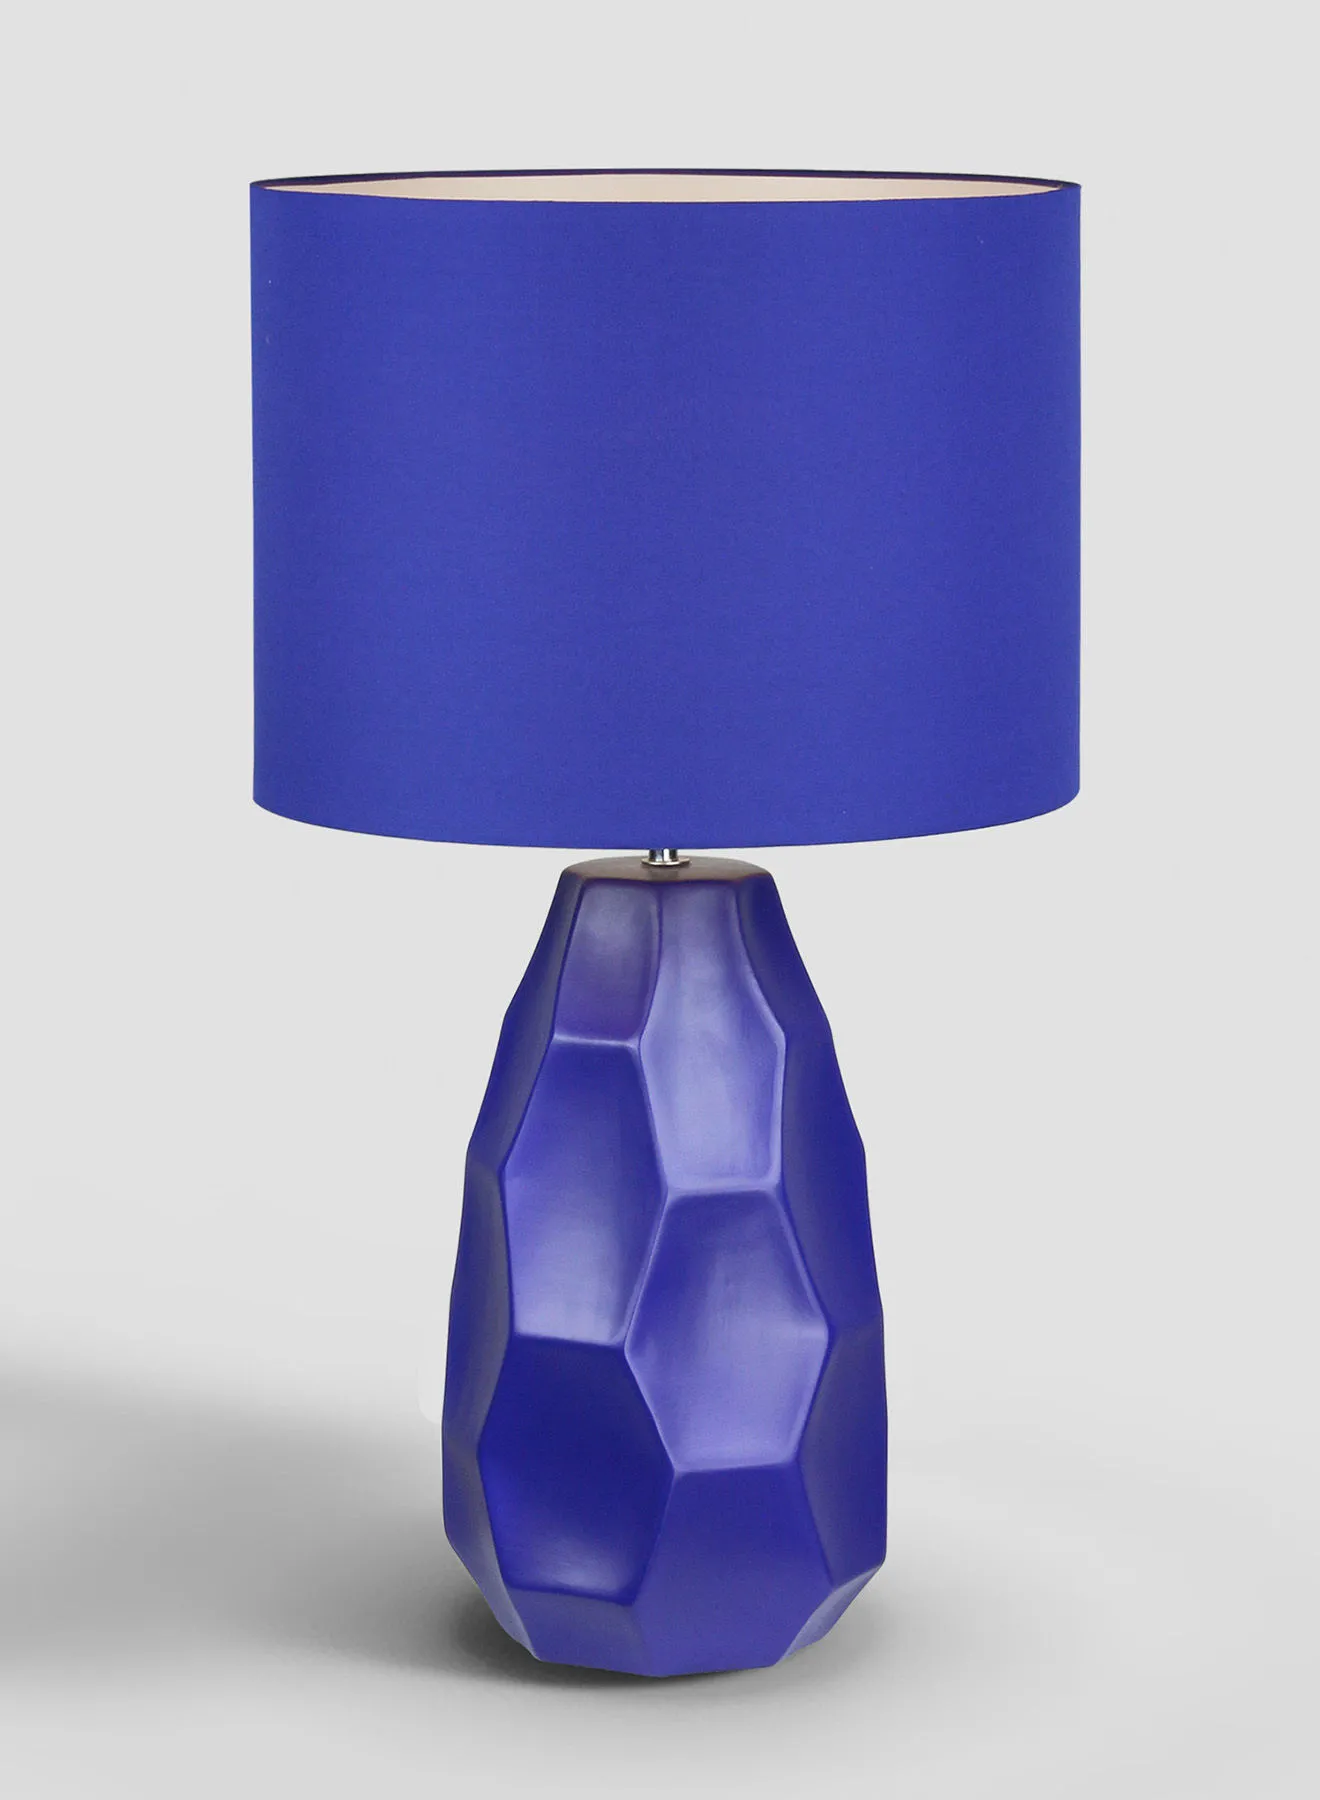 تبديل مصباح طاولة سيراميك سداسي مواد فاخرة فريدة من نوعها لمنزل أنيق ومثالي AT17171 أزرق 34 × 60.5 أزرق 34 × 60.5 سم